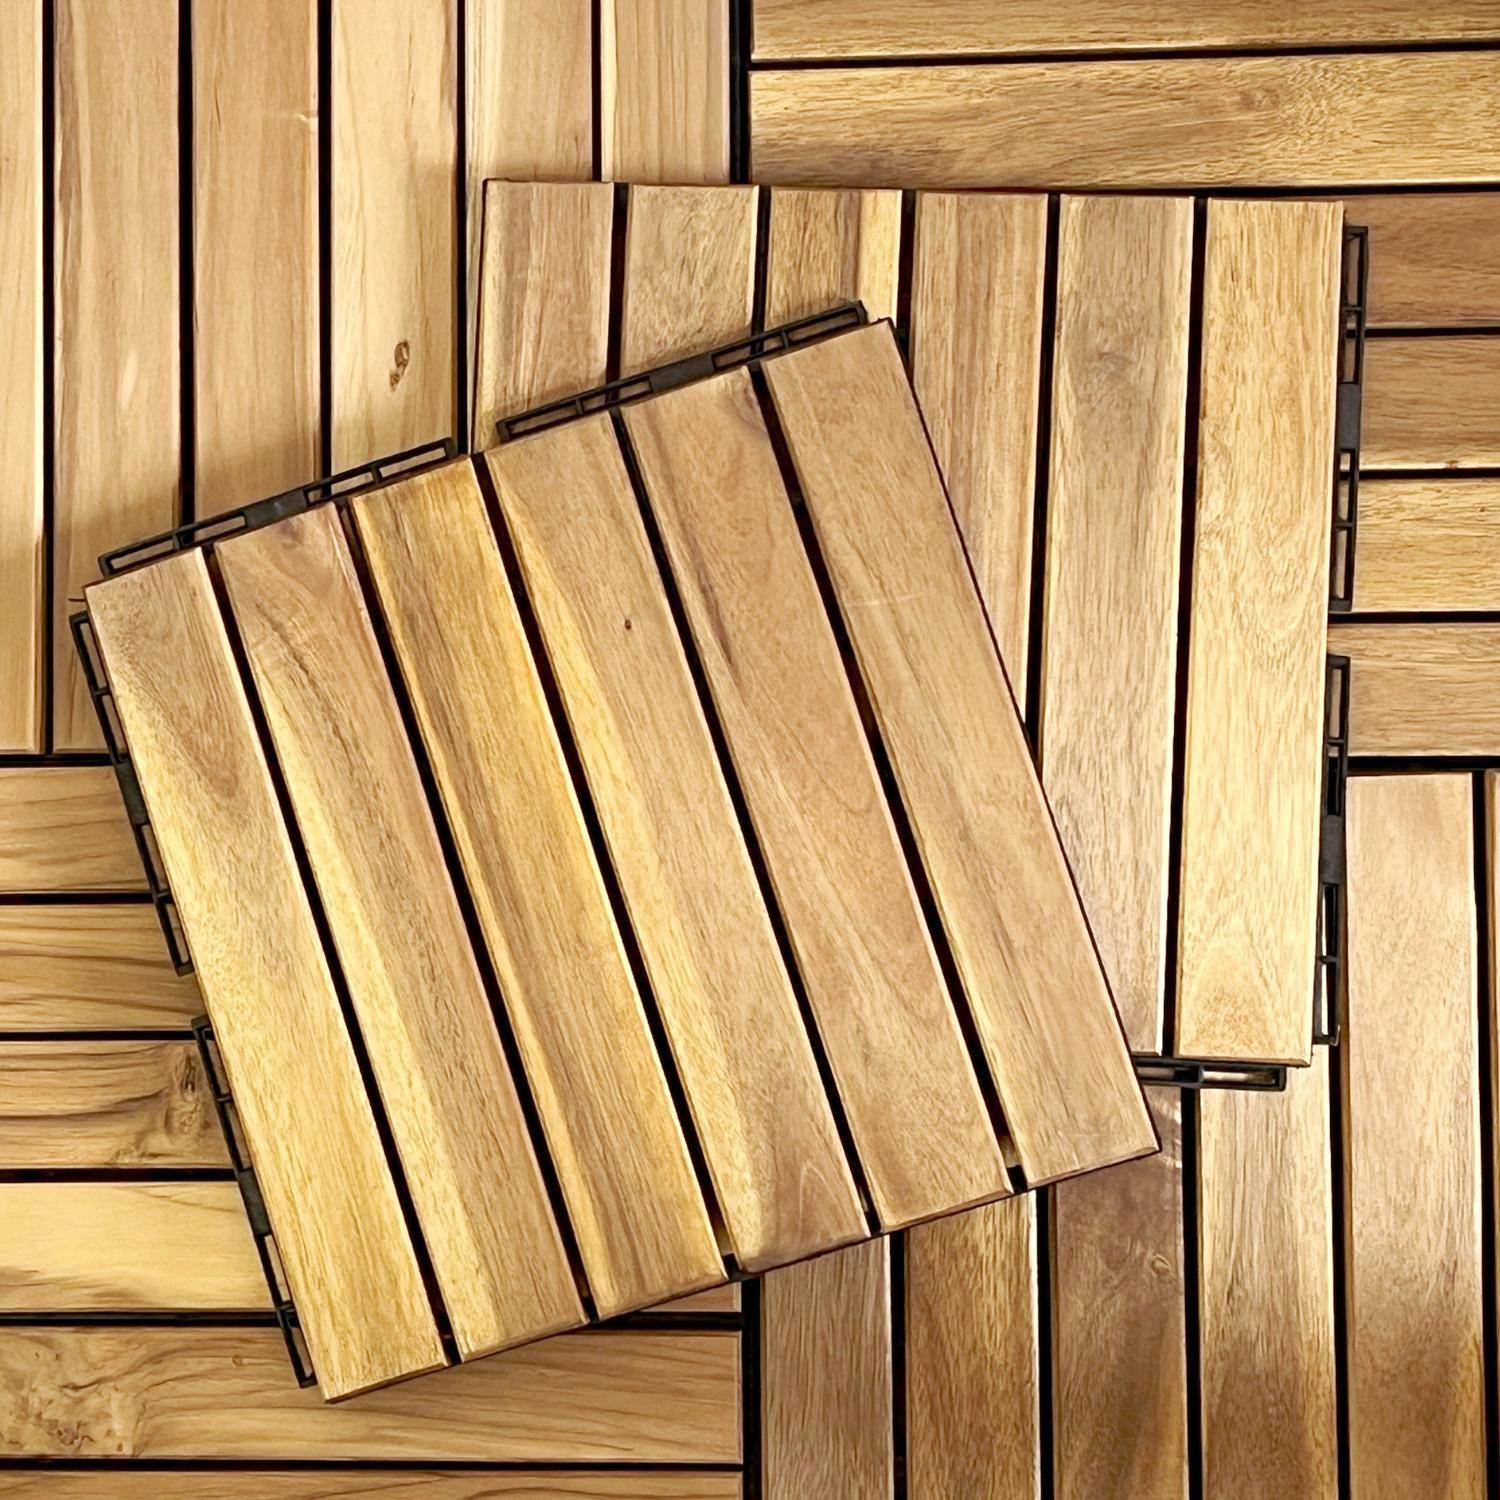 Lote de 36 ladrilhos para decks de madeira de acácia 30x30cm, padrão linear, ripado, de encaixe,sweeek,Photo5